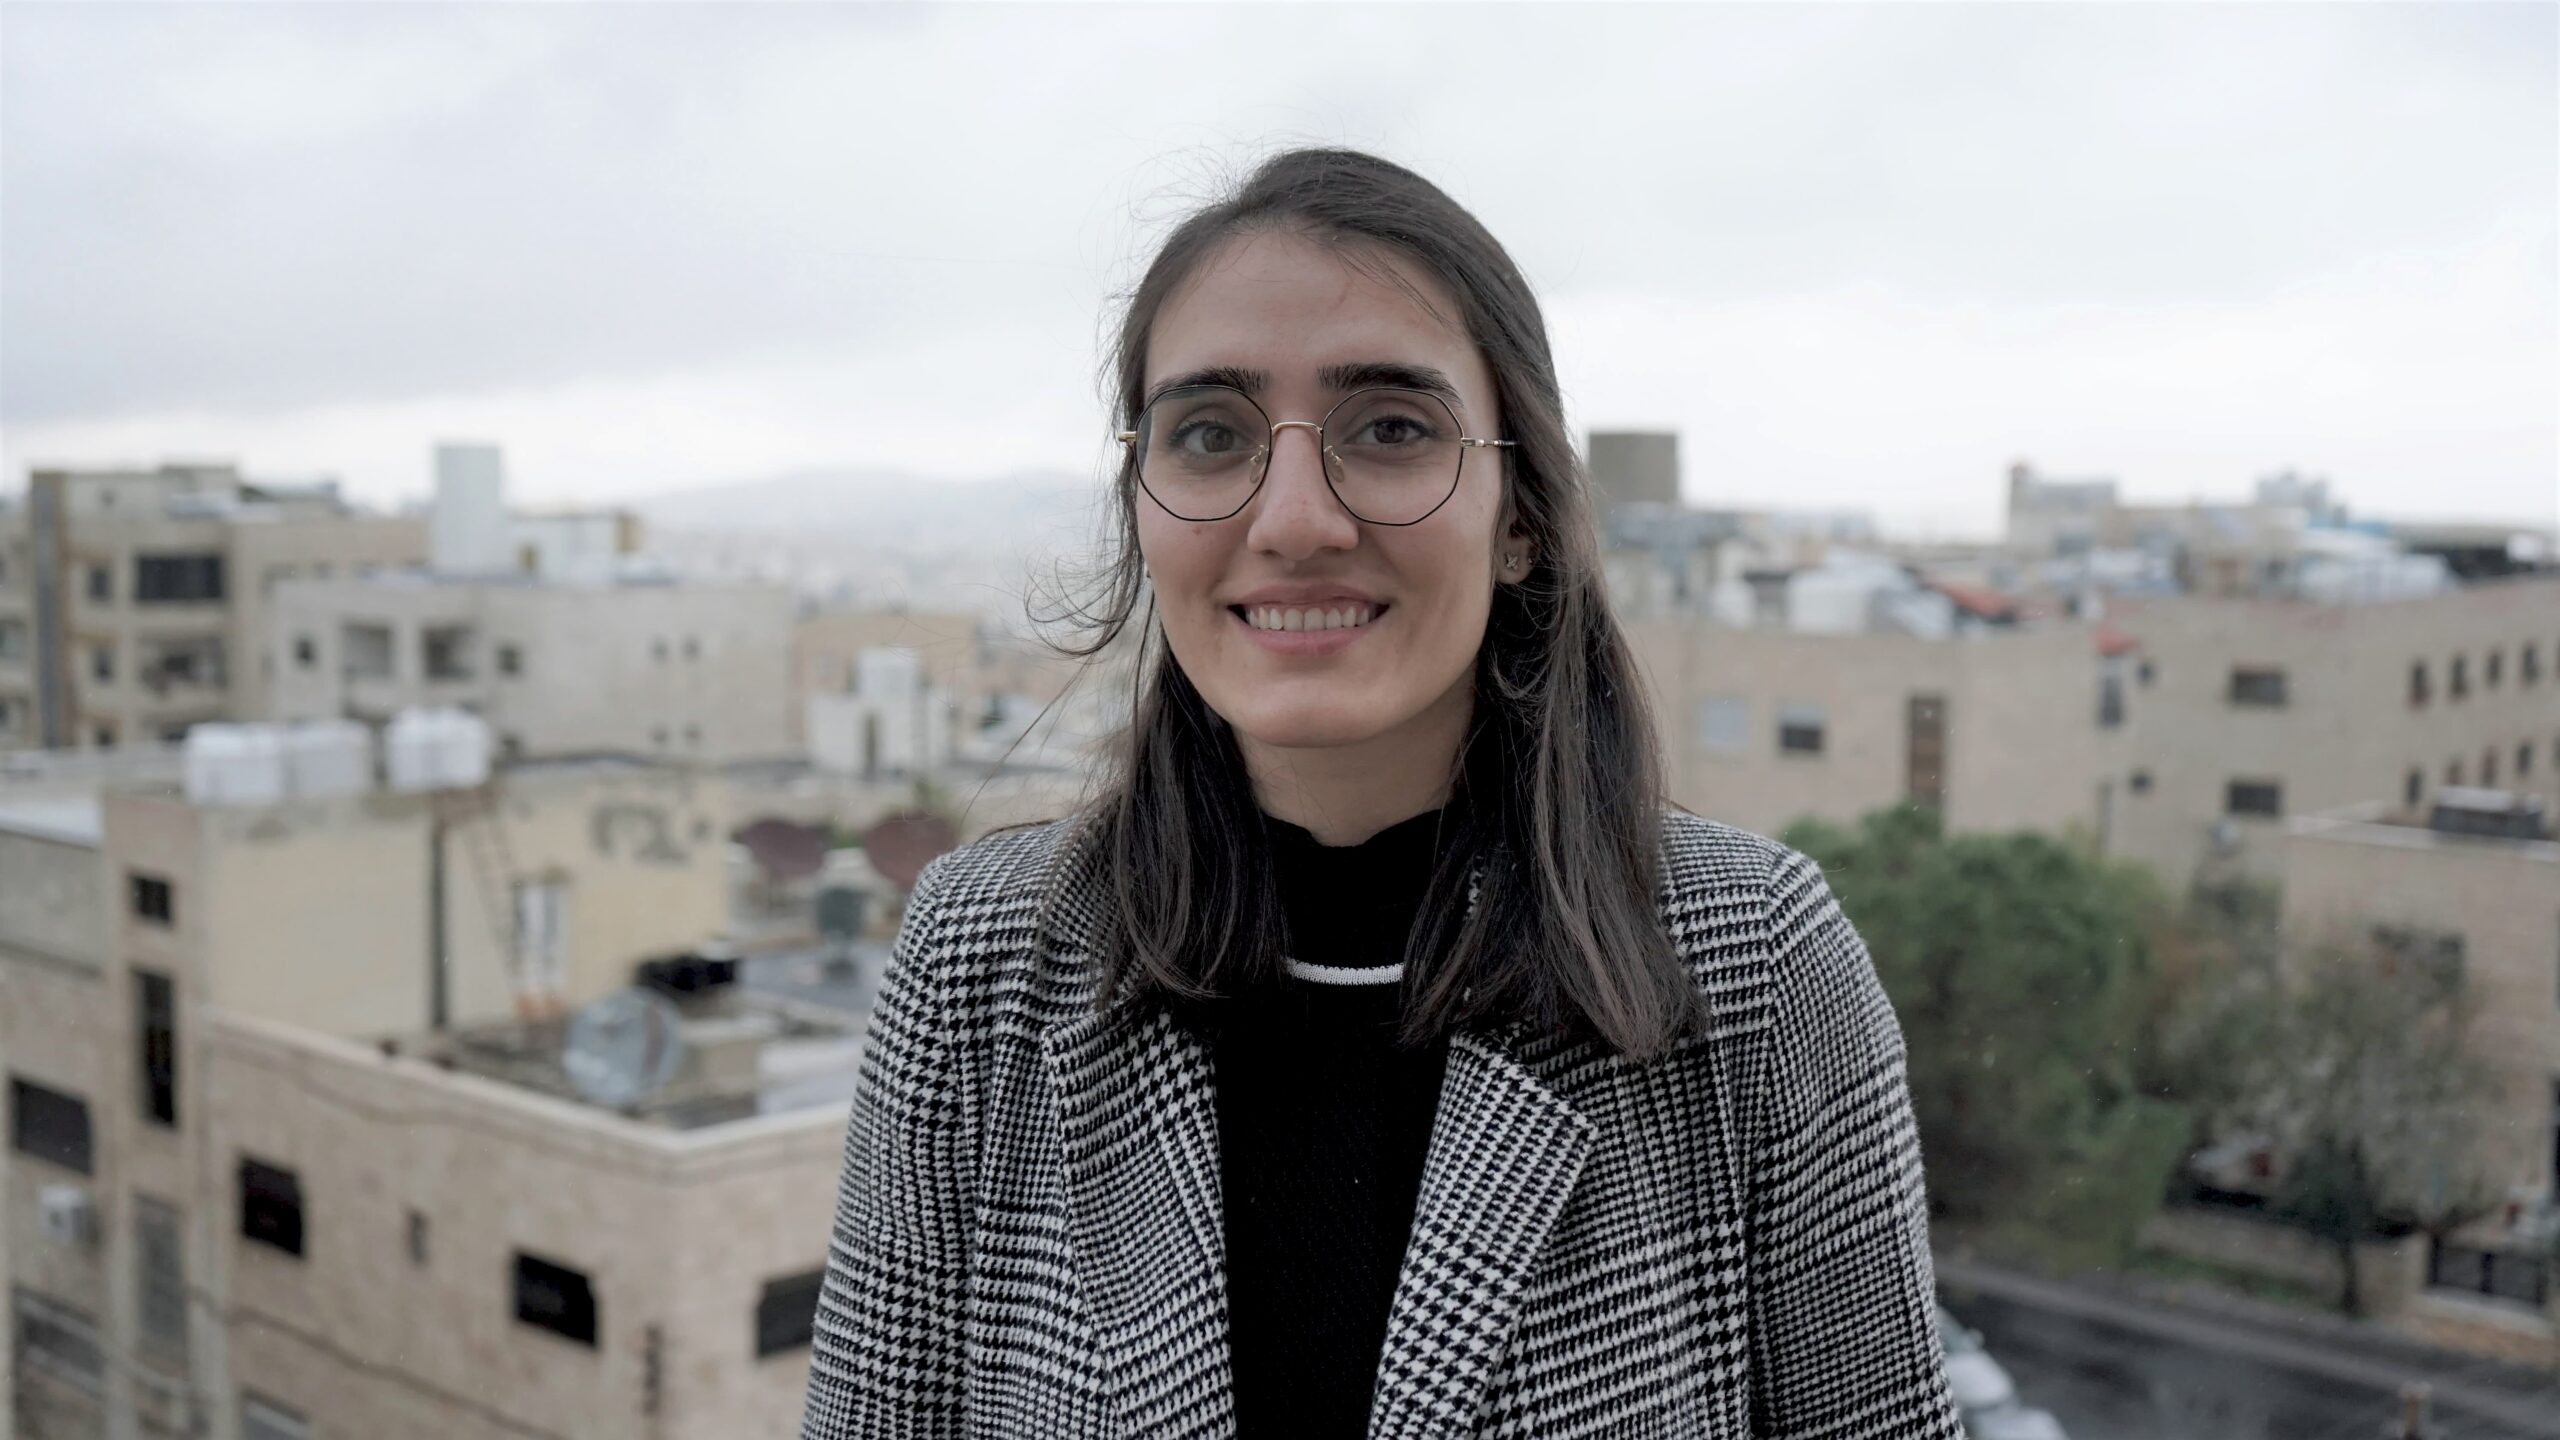 Fathia Zorba foran slørrede bygninger og himmel i Jordan